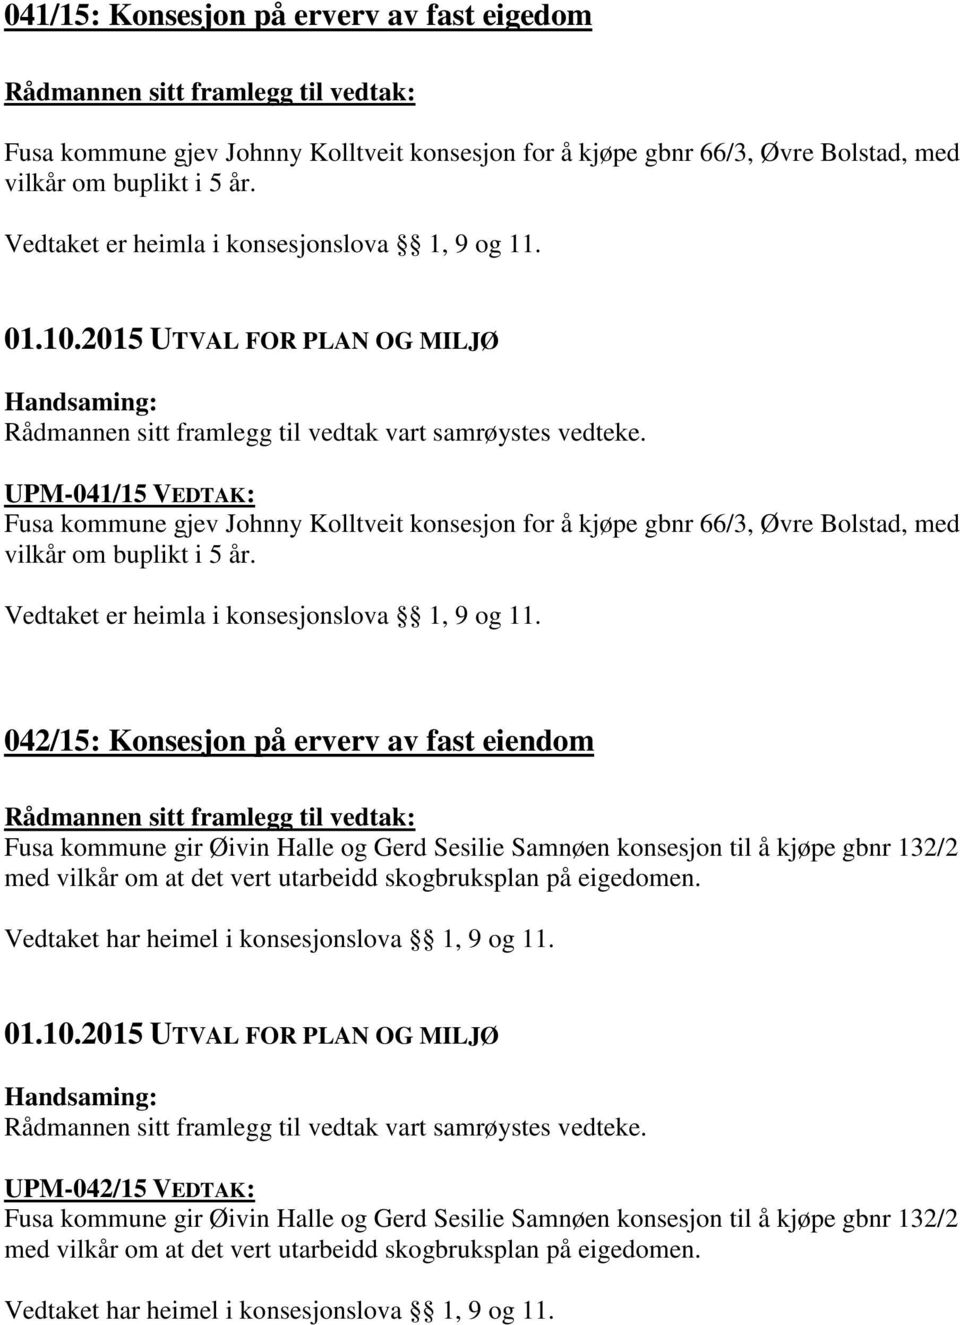 UPM-041/15 VEDTAK: Fusa kommune gjev Johnny Kolltveit konsesjon for å kjøpe gbnr 66/3, Øvre Bolstad, med vilkår om buplikt i 5 år. Vedtaket er heimla i konsesjonslova 1, 9 og 11.